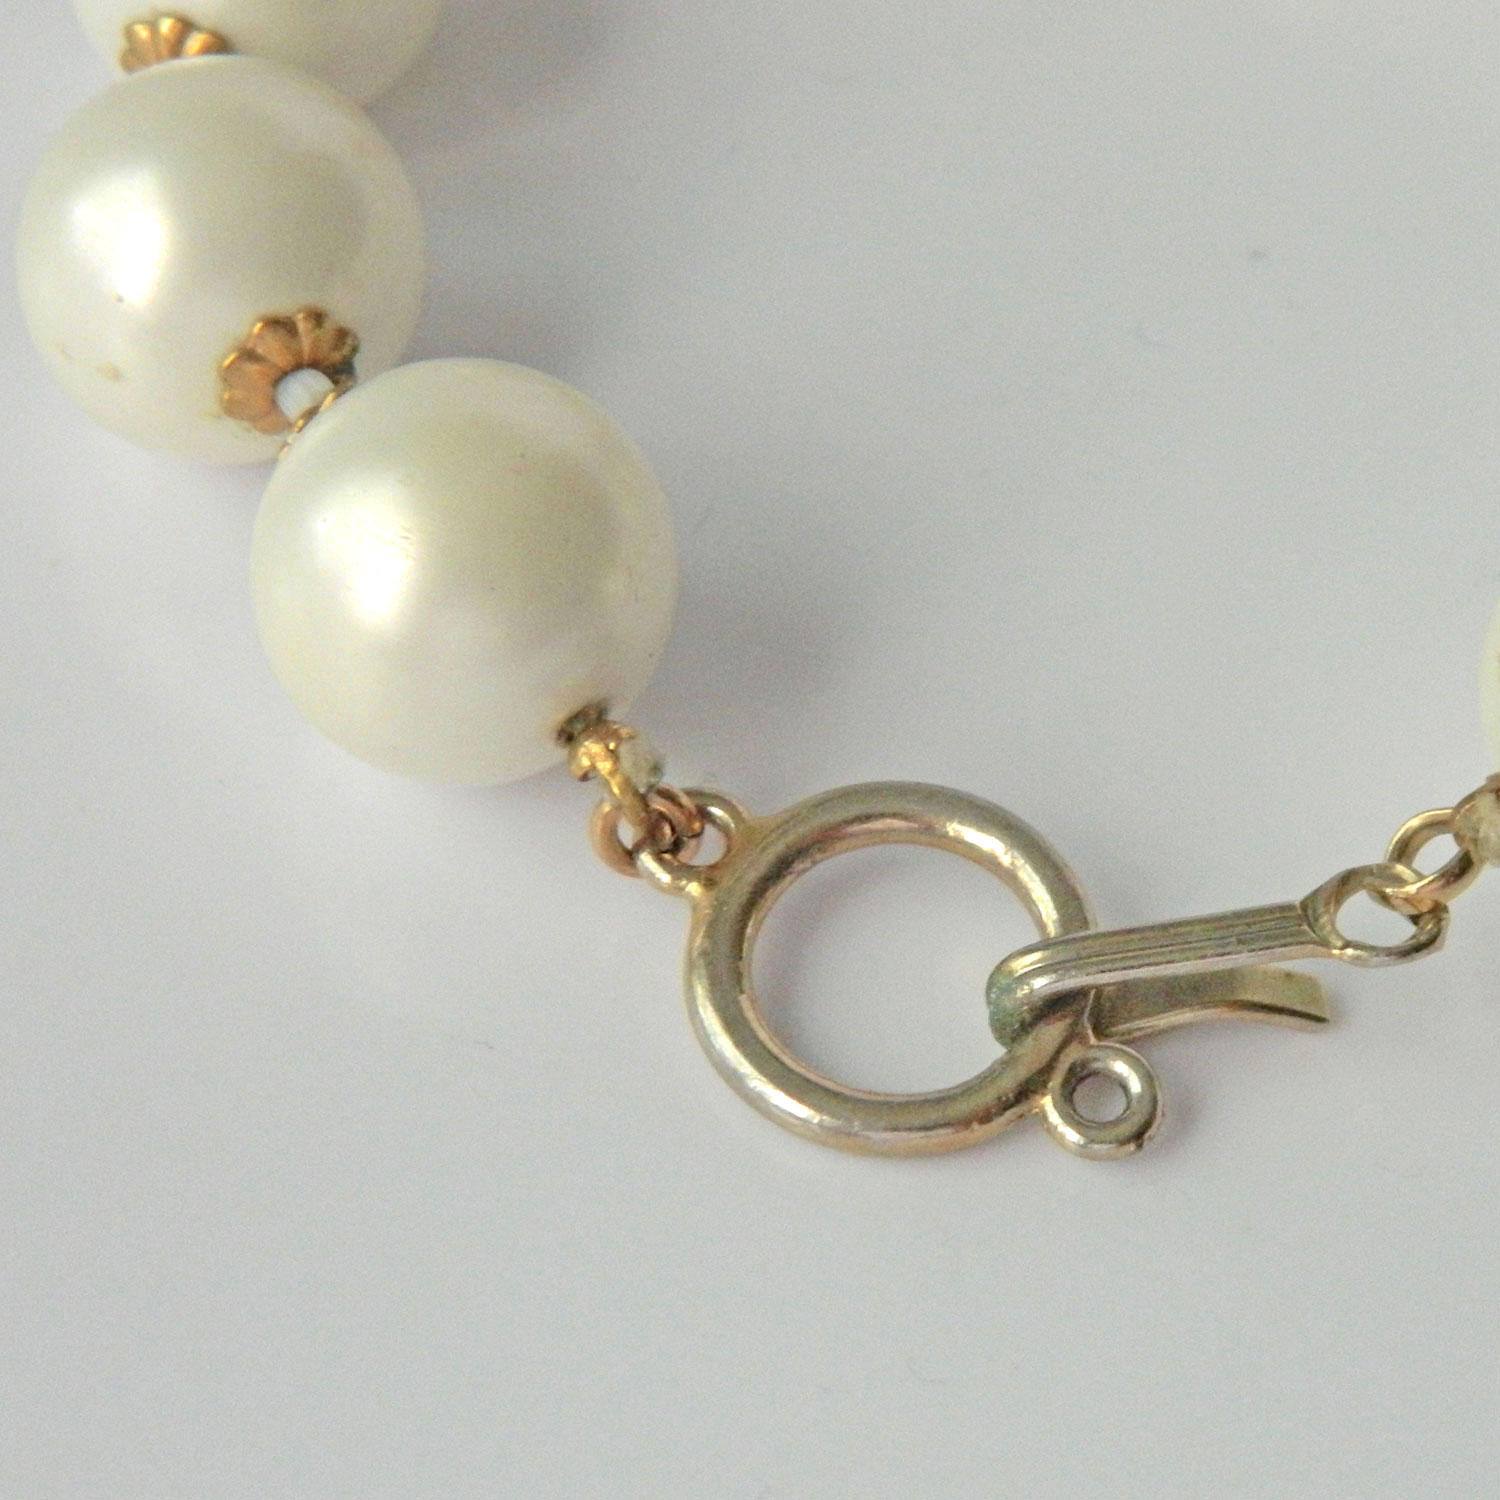 Vintage faux pearl bracelet